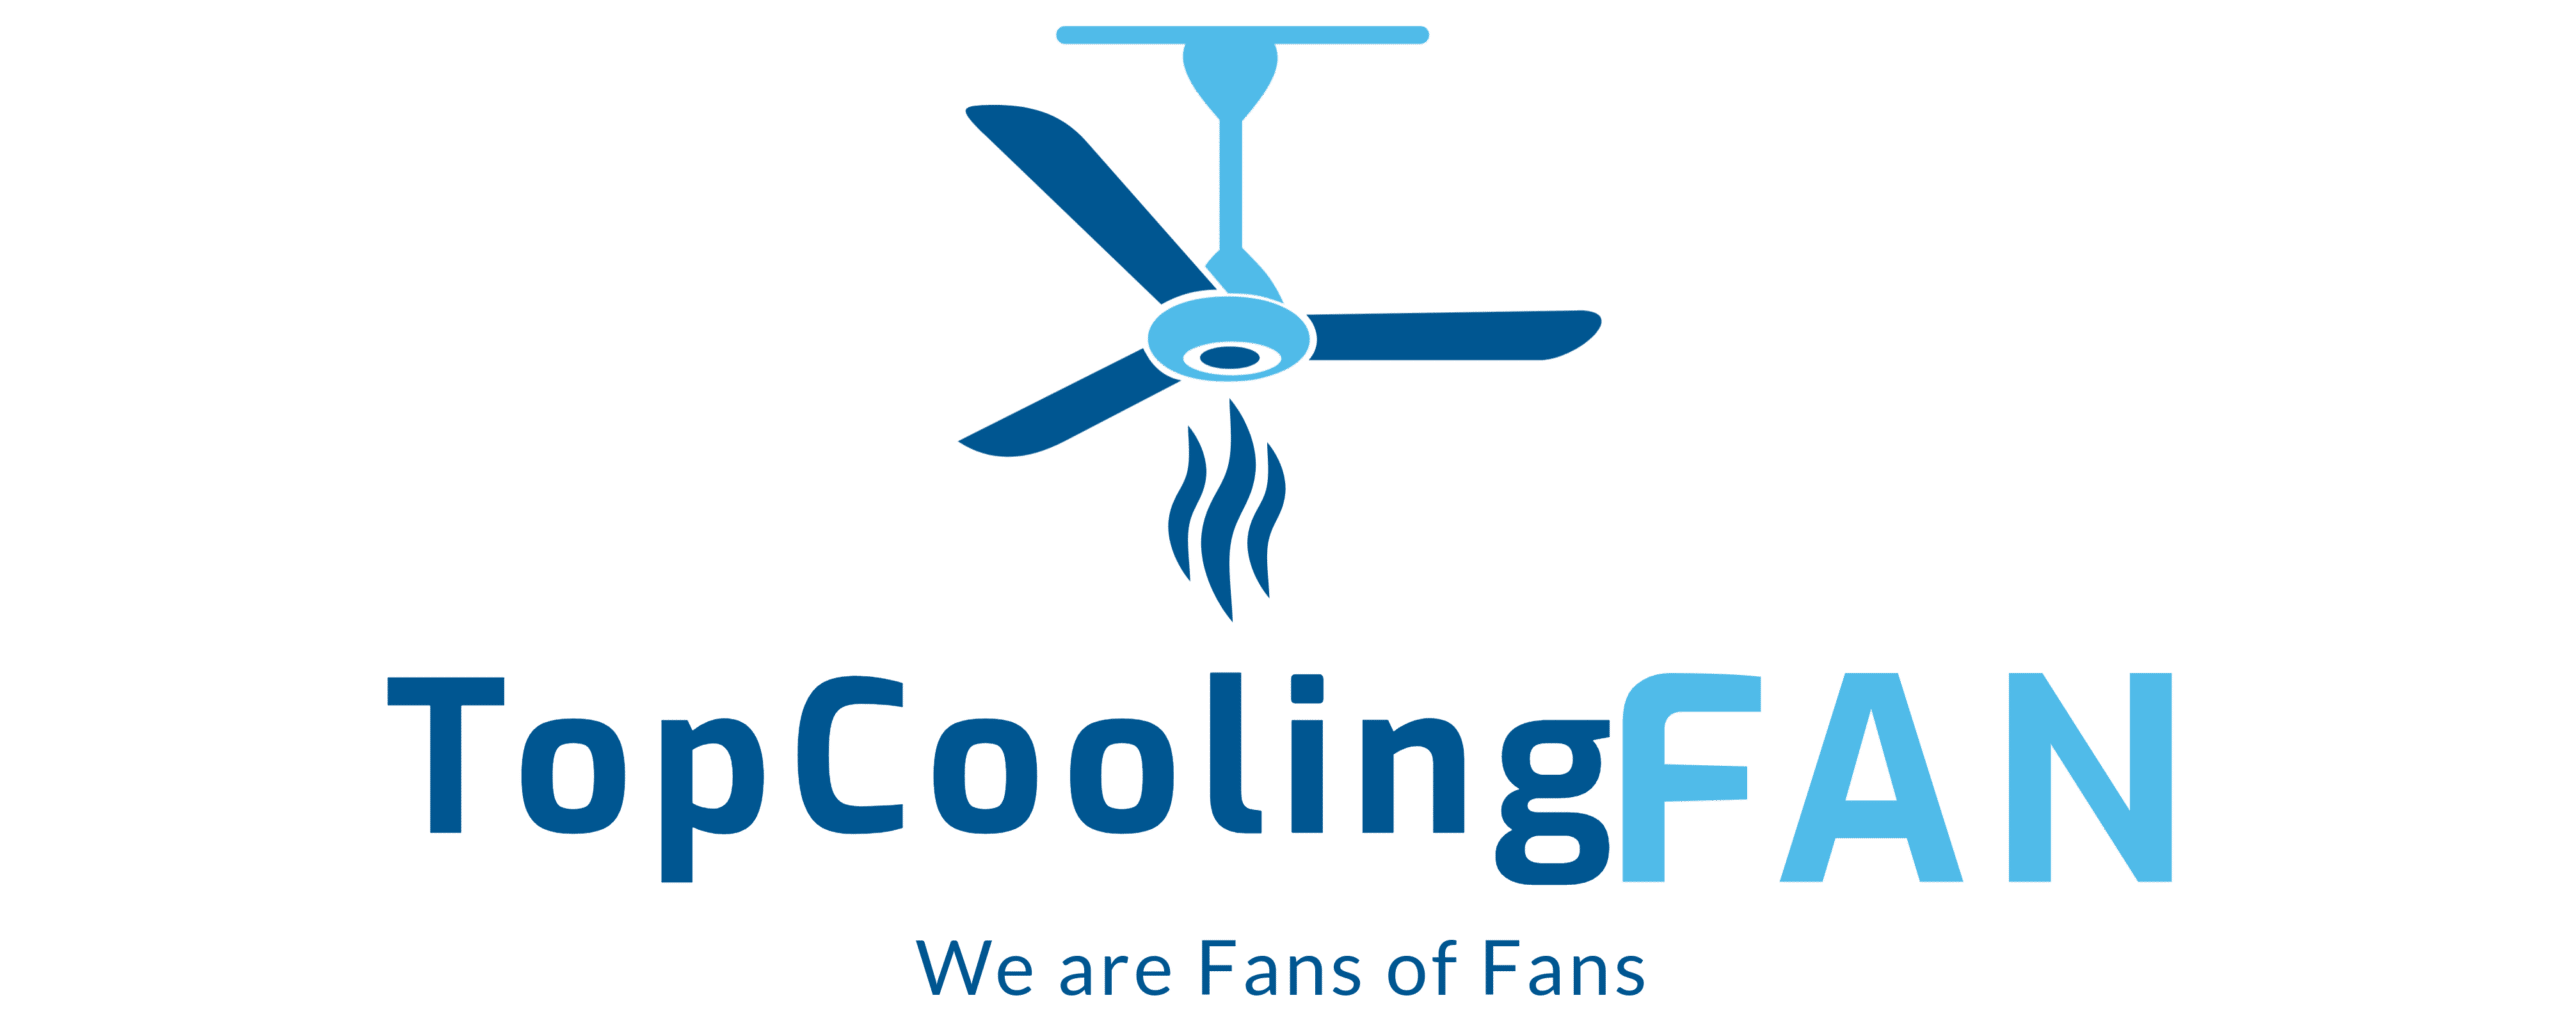 Top Cooling Fan